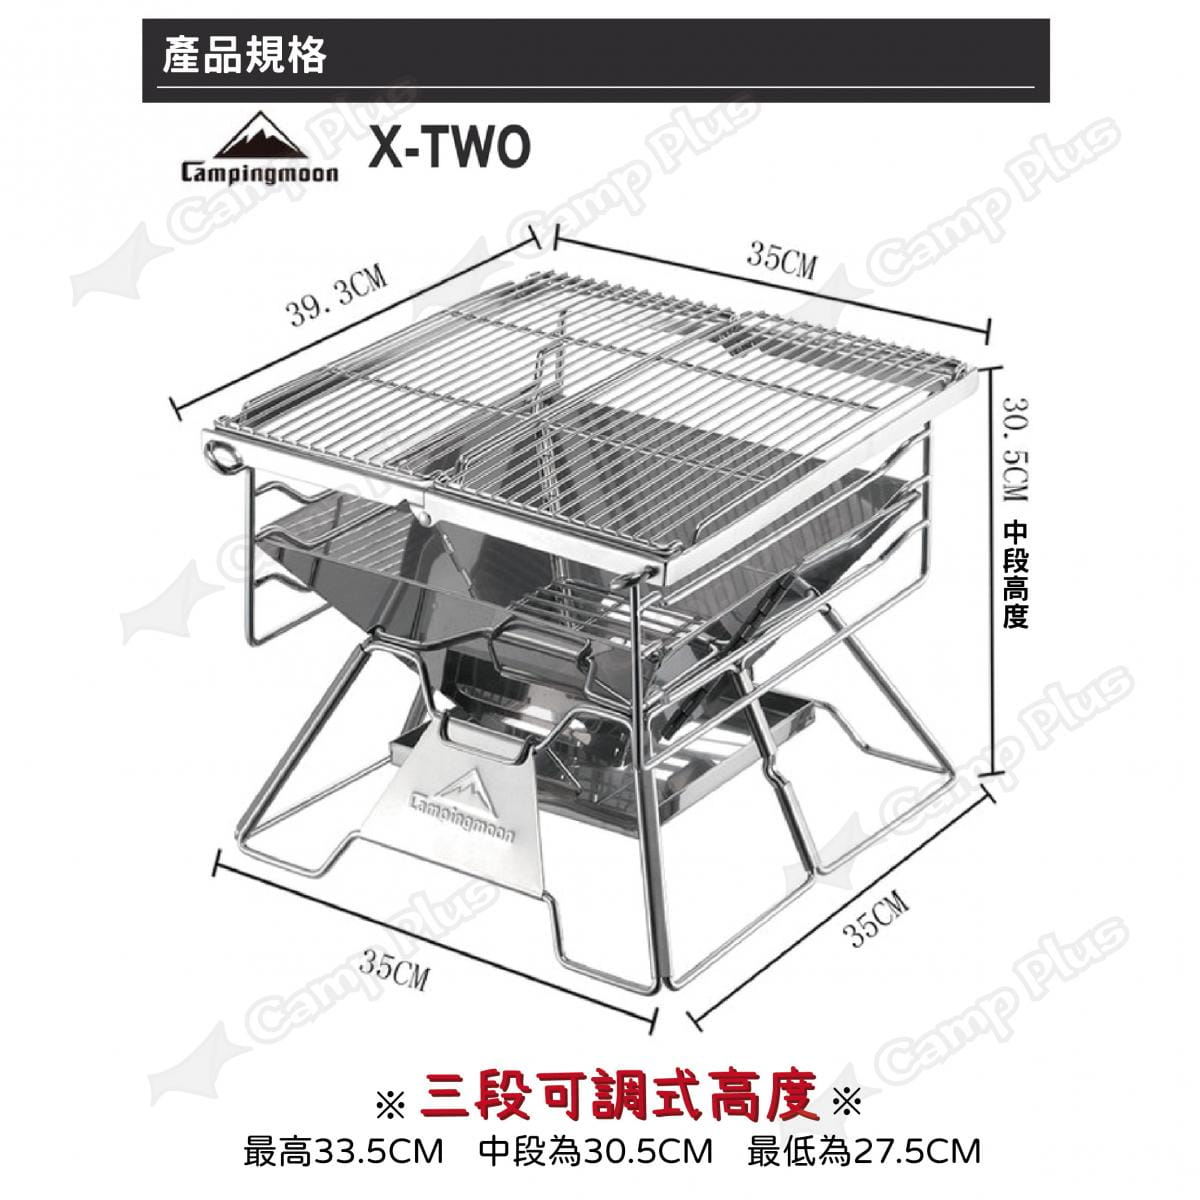 【柯曼】極厚超級烤爐(X-TWO) 304不鏽鋼  悠遊戶外 1